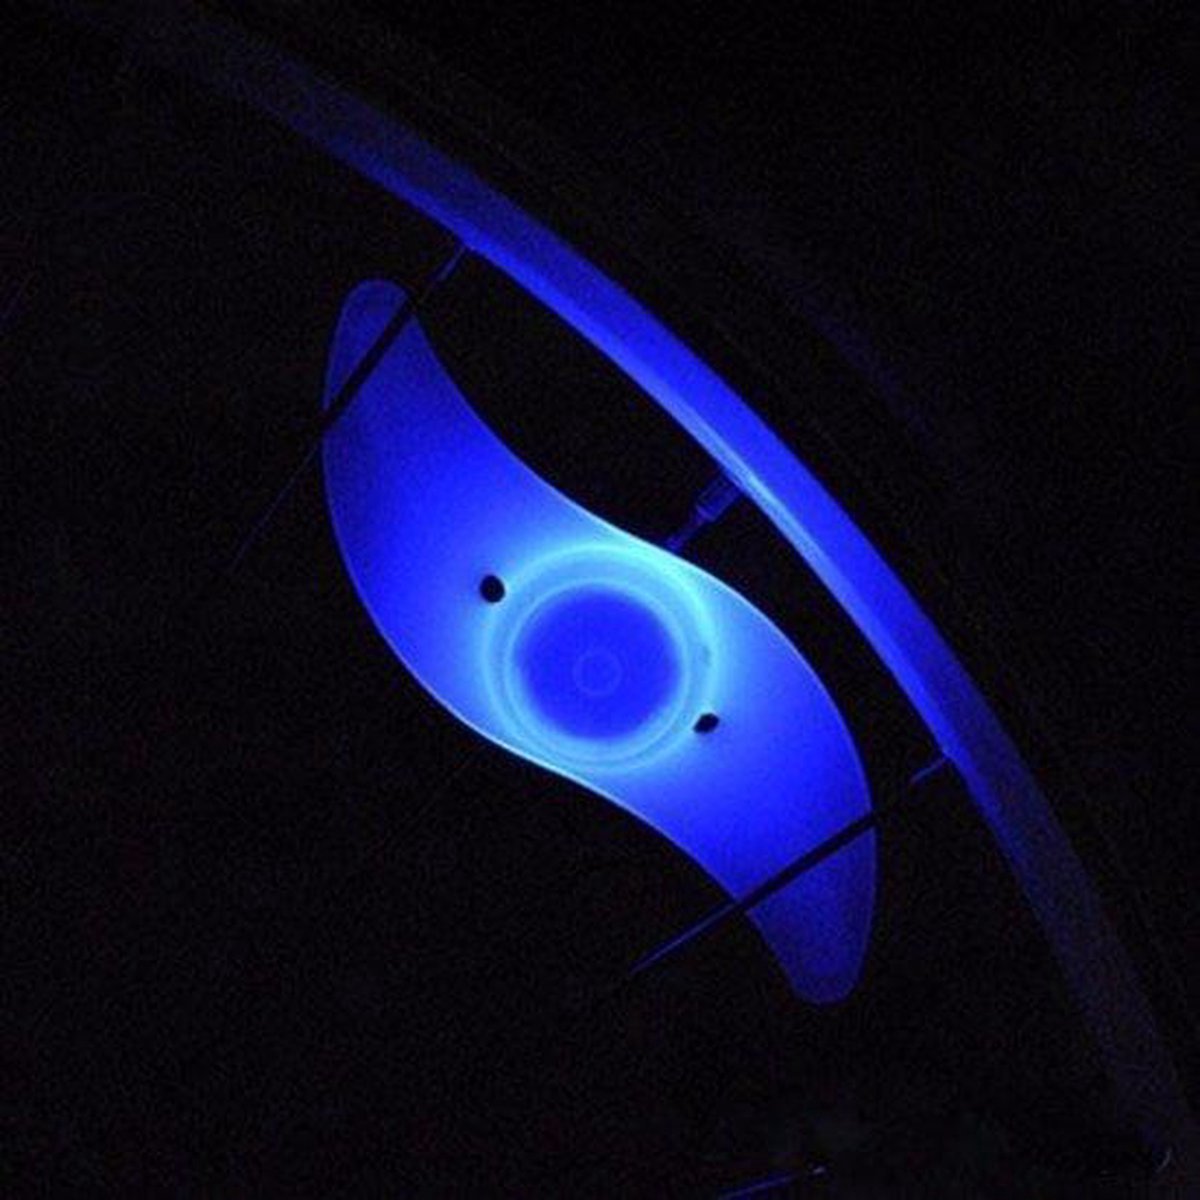 CHPN - Spaakverlichting - Fietsverlichting - Lampjes in spaken - Cadeau - Blauw licht - Zichtbaar in het verkeer - Kinderfiets lampjes